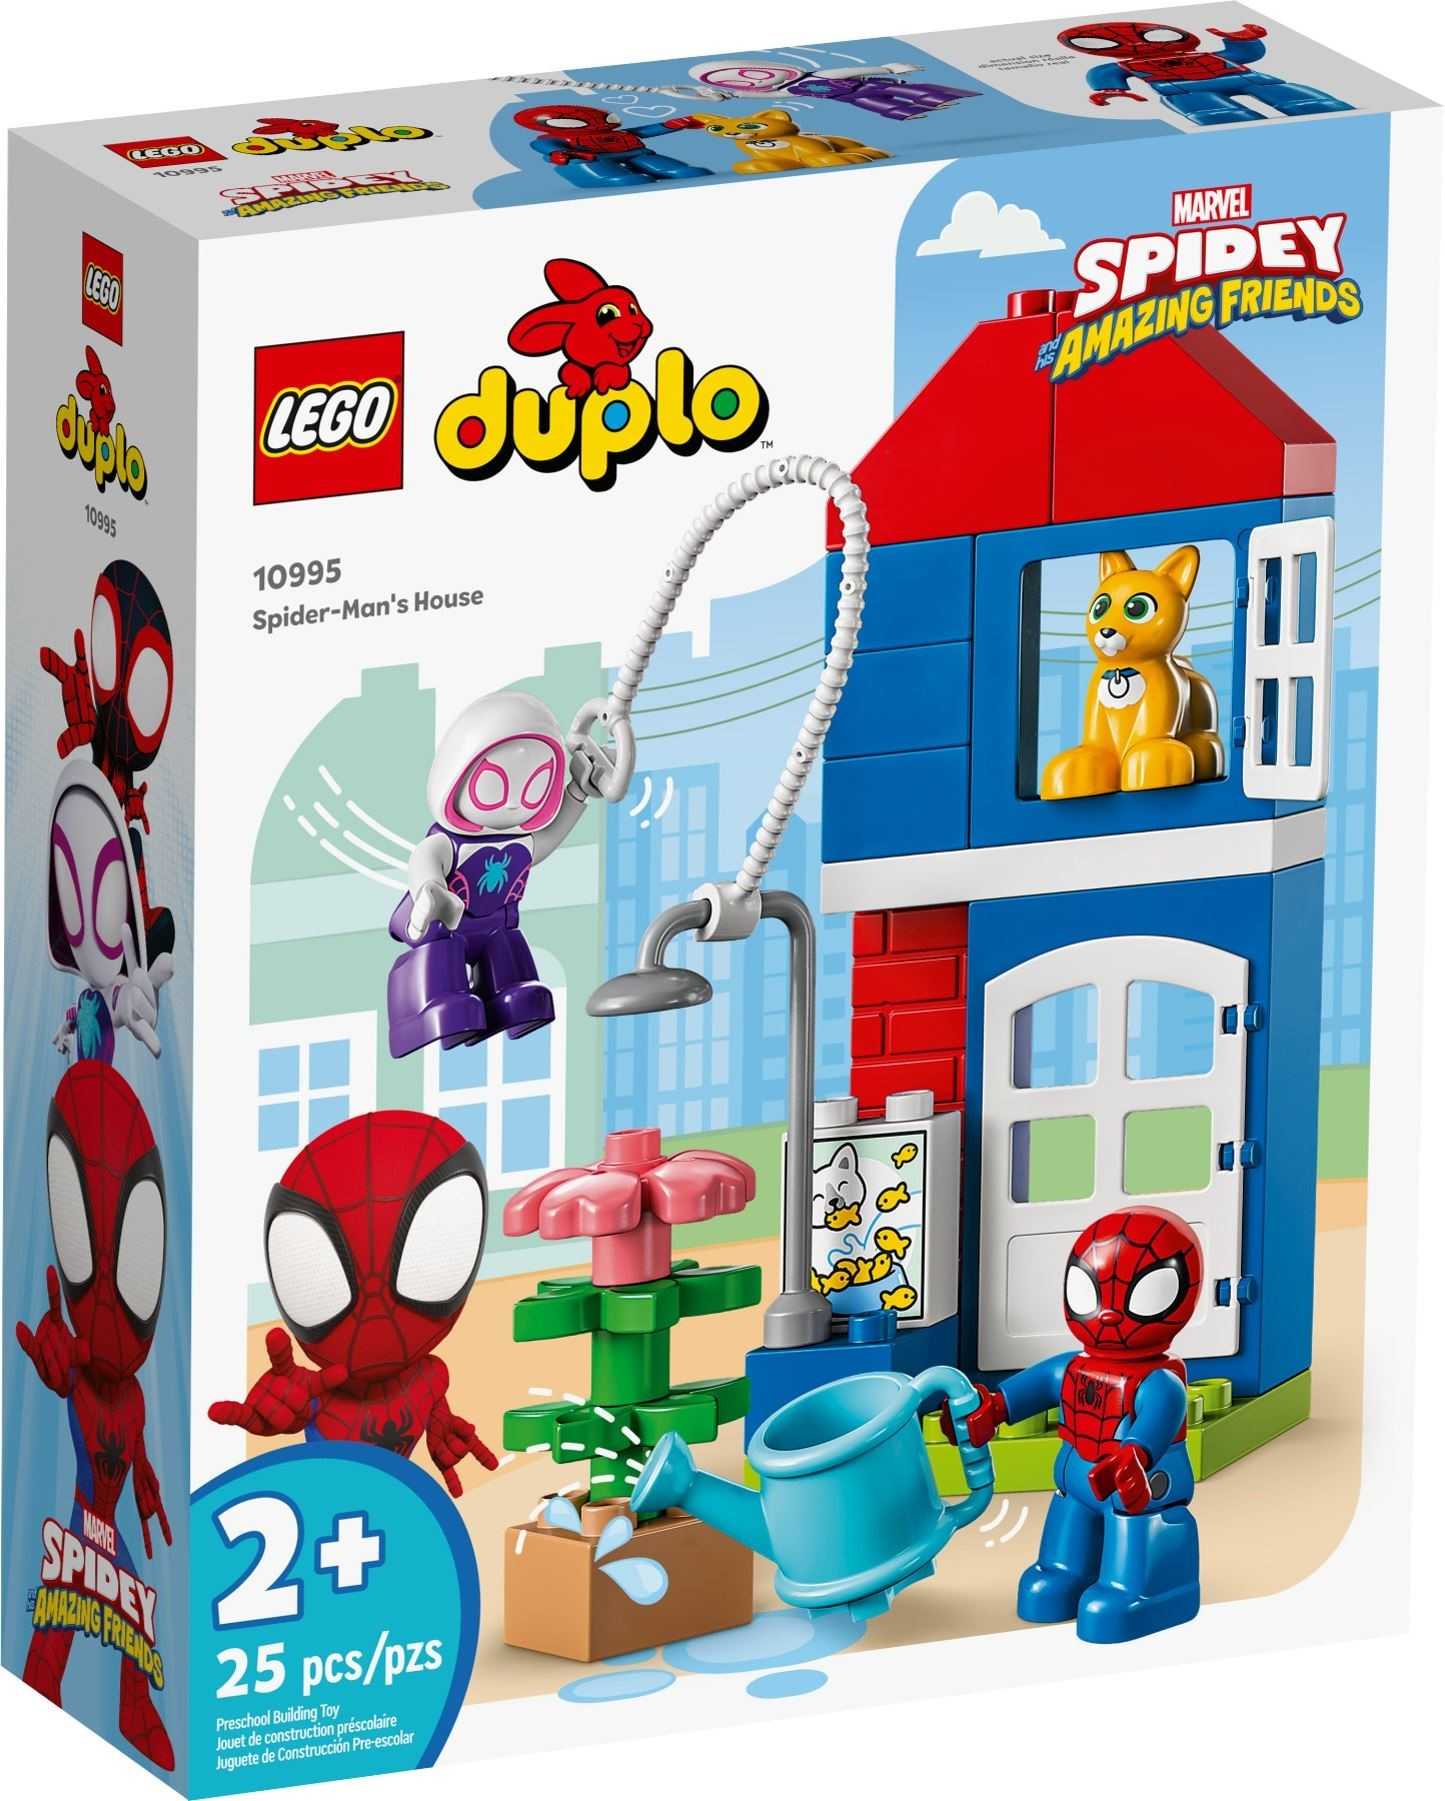 【電積系@北投】LEGO 10995 Spider